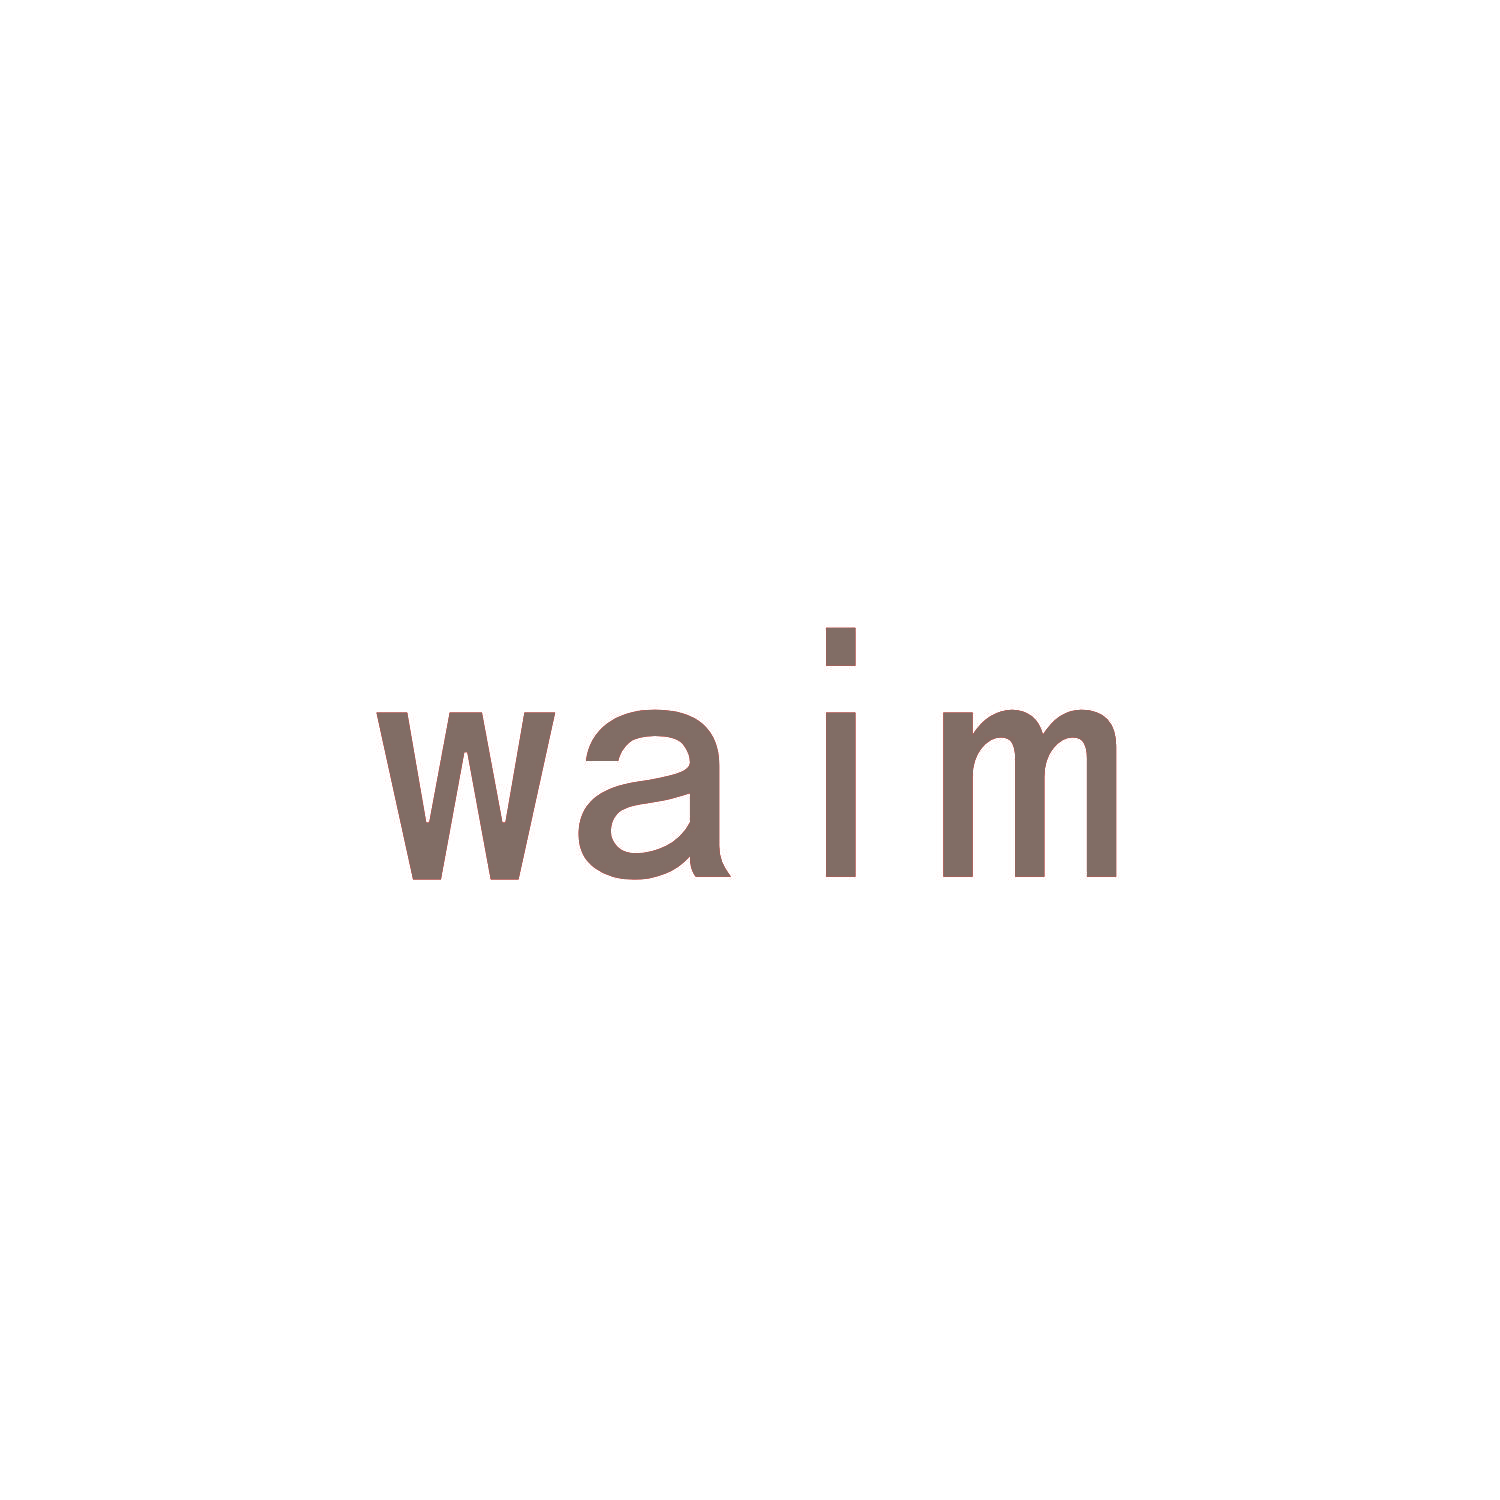 WAIM